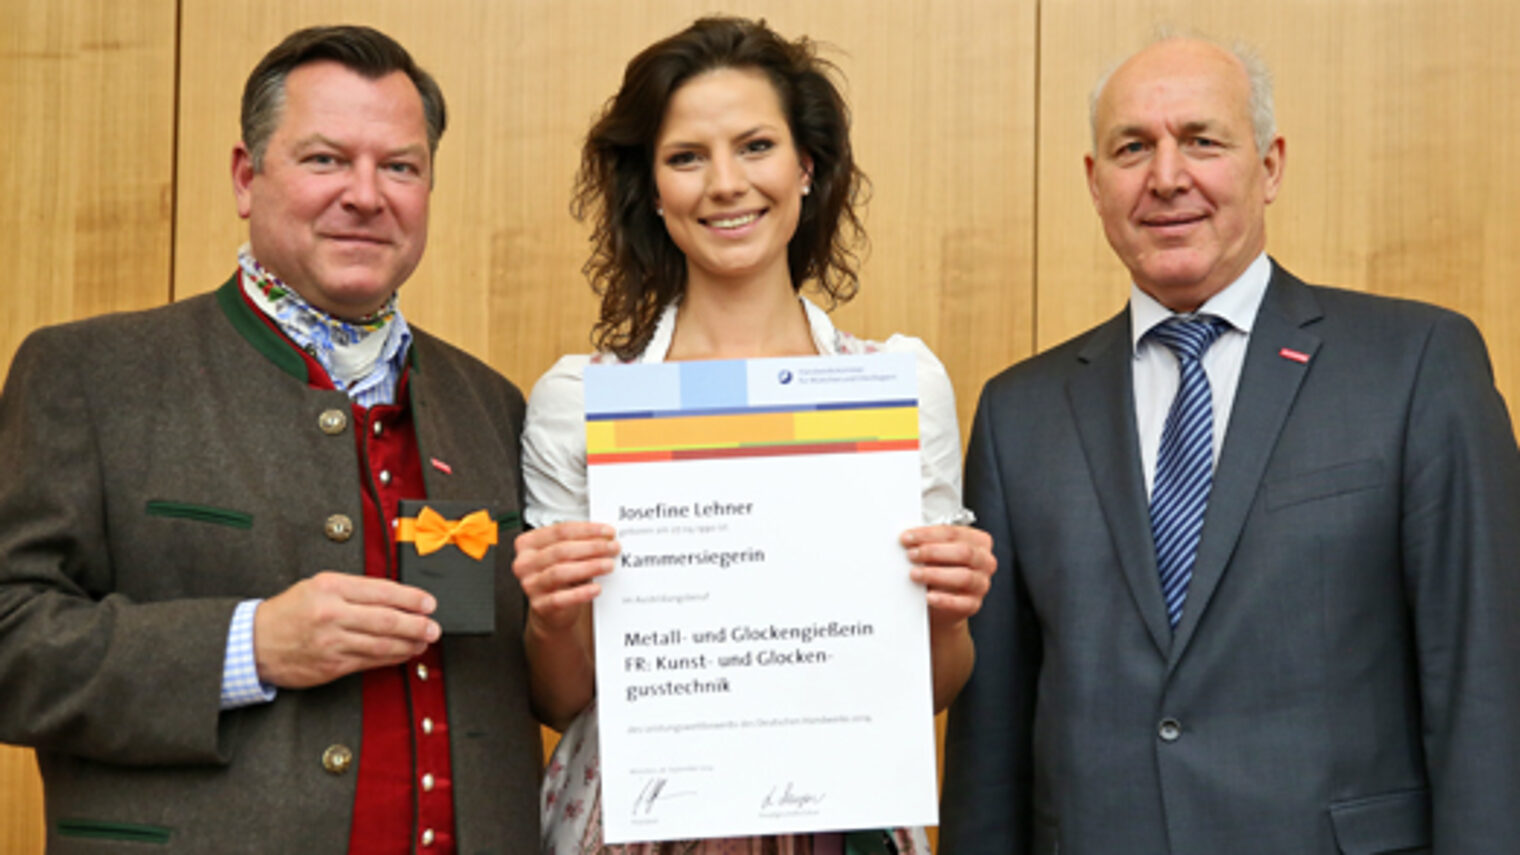 Josefine Lehner (Mitte) wurde Kammersiegerin bei den Metall- und Glockengießern, FR: Kunst- und Glockengusstechnik. Münchens Bürgermeister Josef Schmid (links) und Kammervizepräsident Franz Xaver Peteranderl gratulierten.